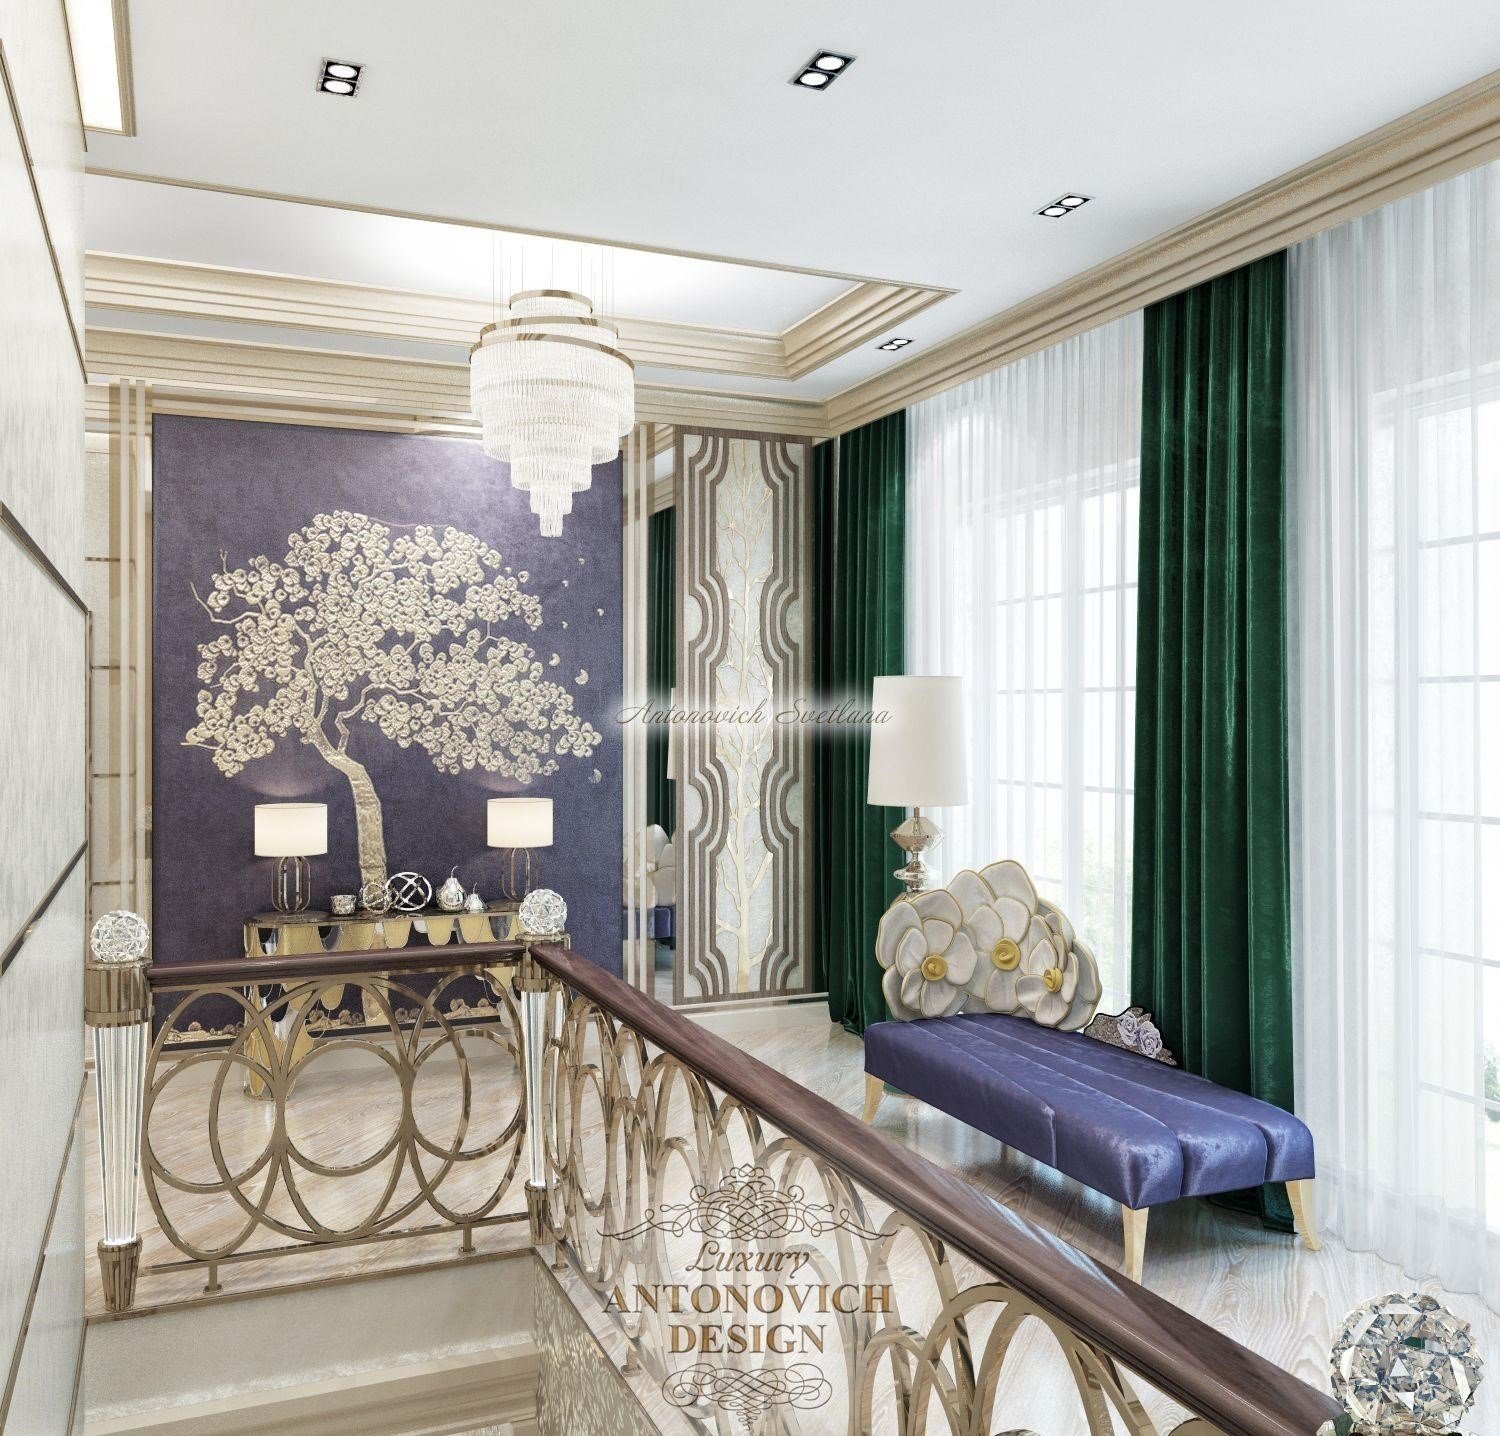 Сучасний гардероб в спальні Luxury ANTONOVICH DESIGN